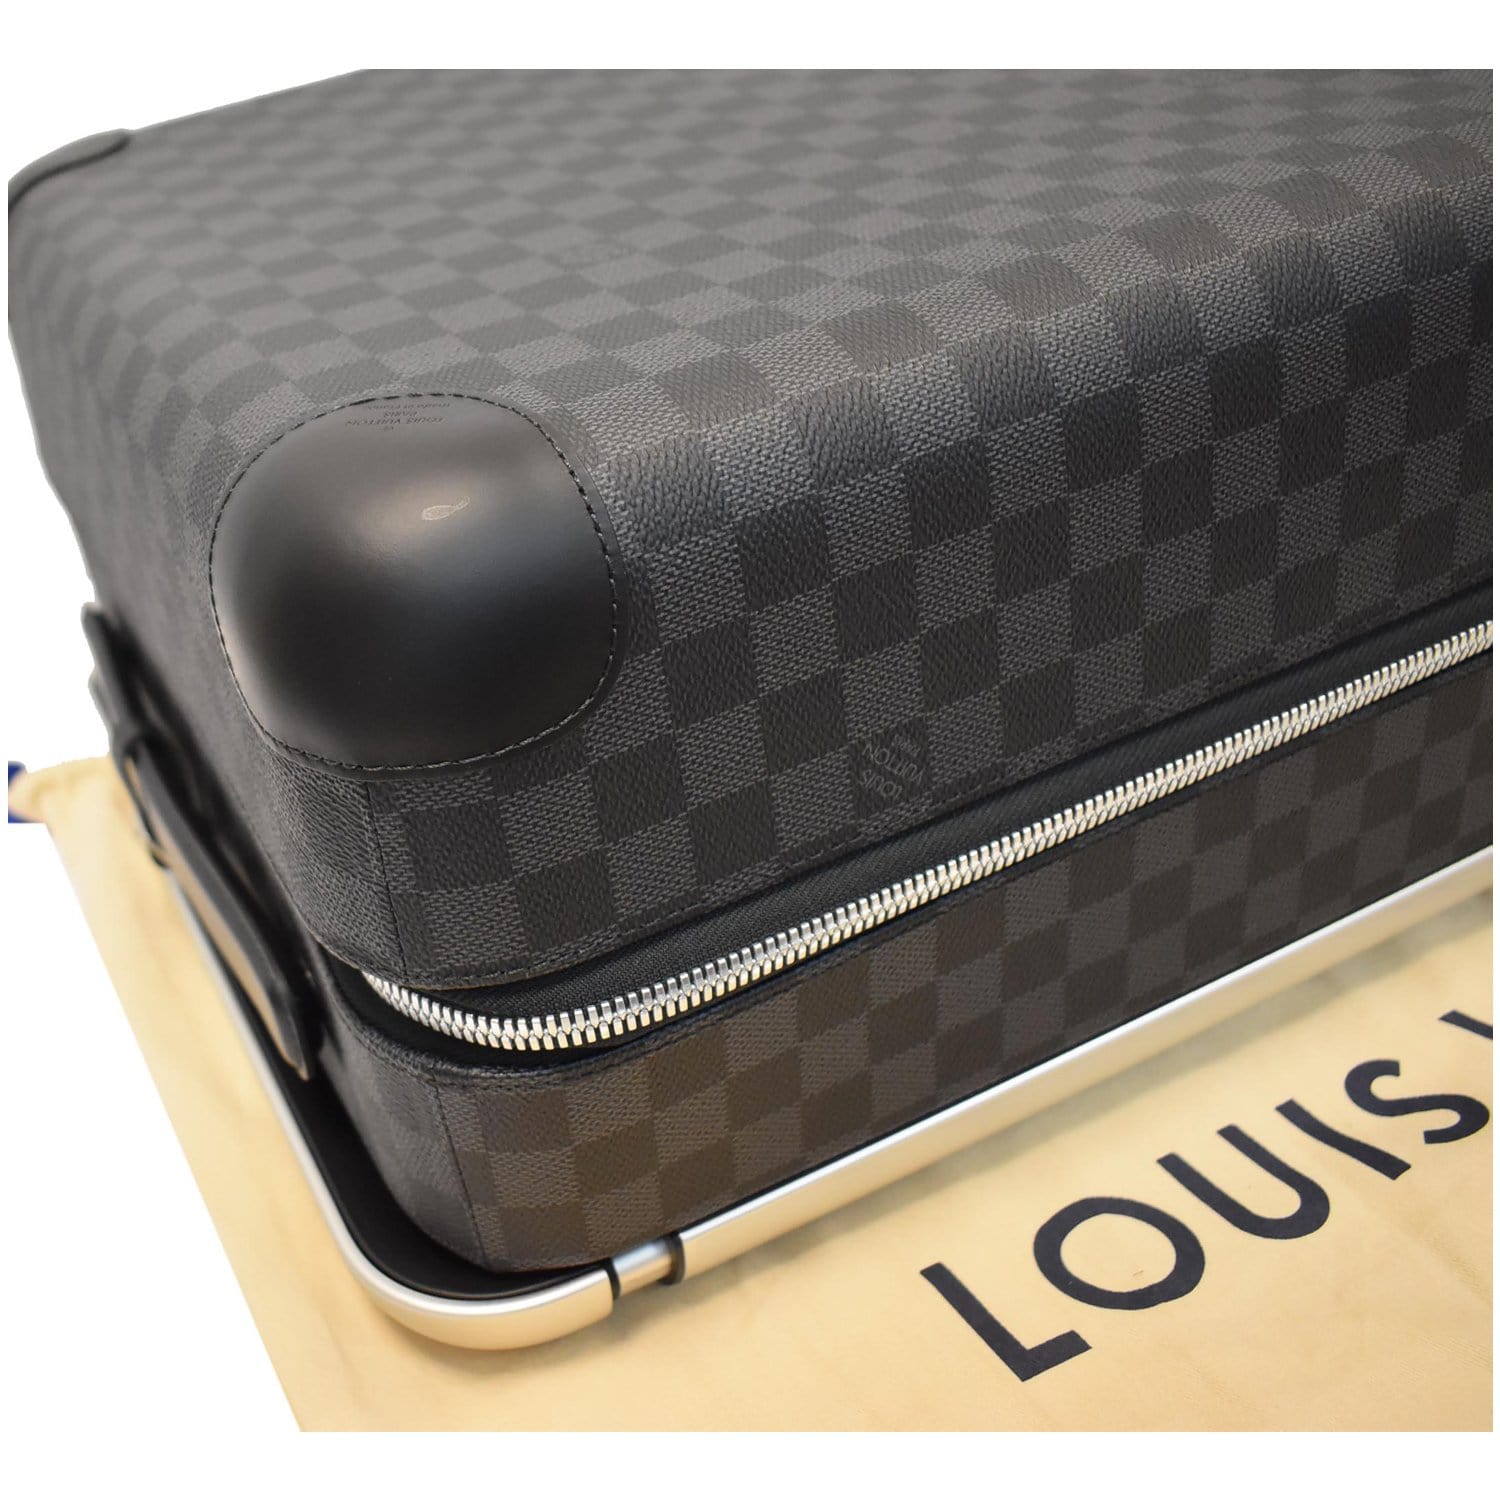 Louis Vuitton Horizon 55 Carry on Luggage - Damier Graphite - Delray Beach  Pawn